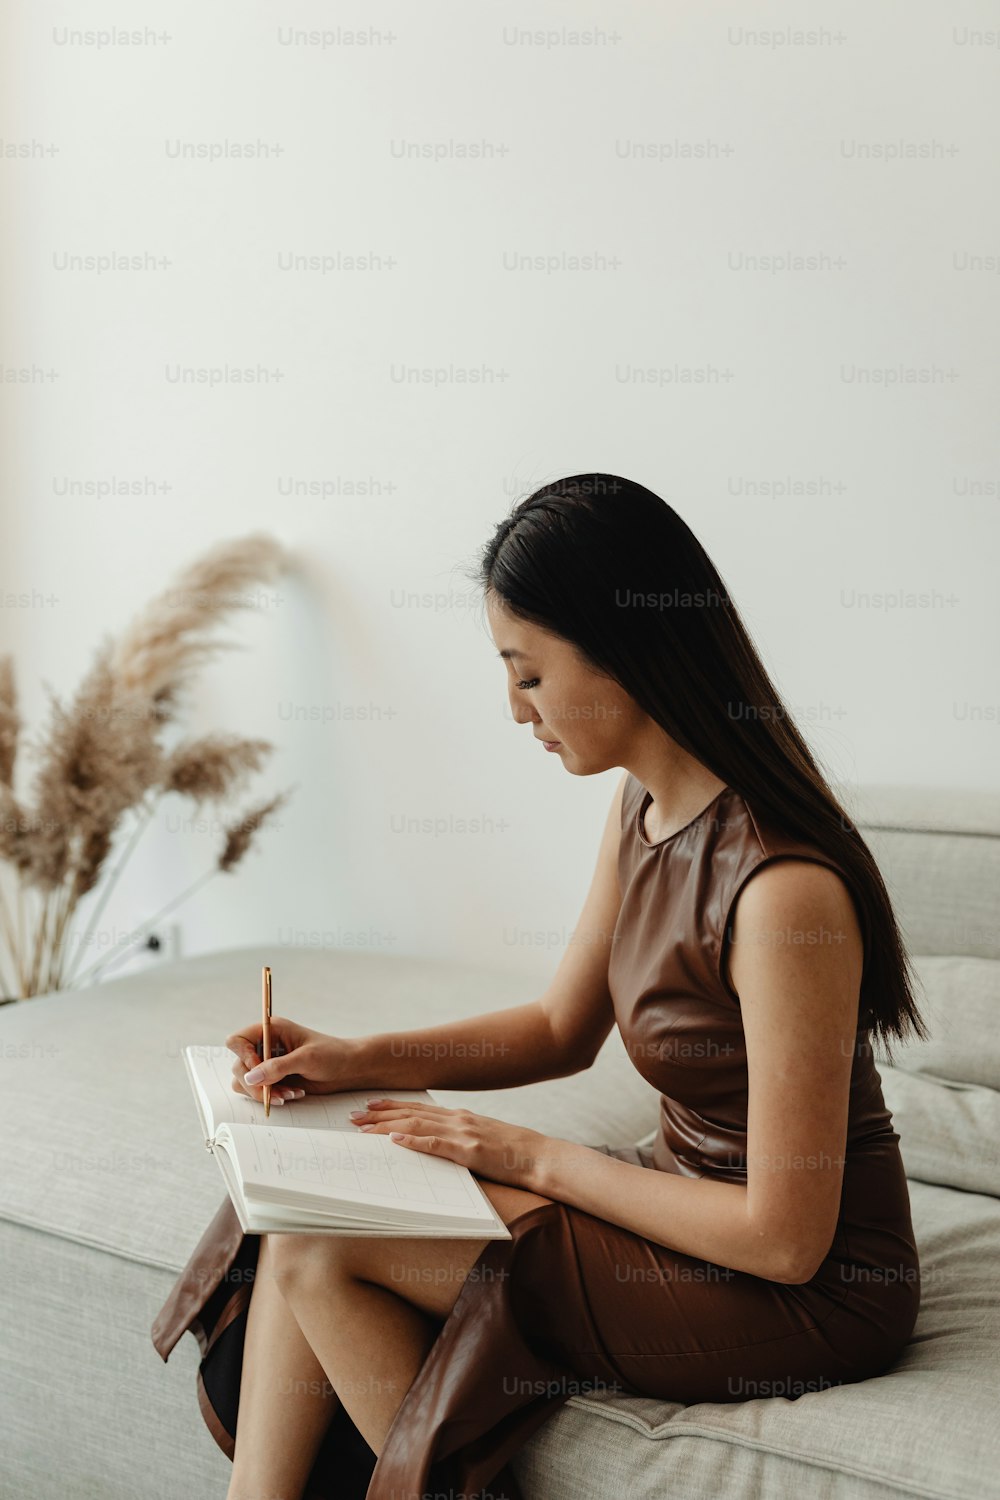 una donna seduta su un divano che scrive in un quaderno